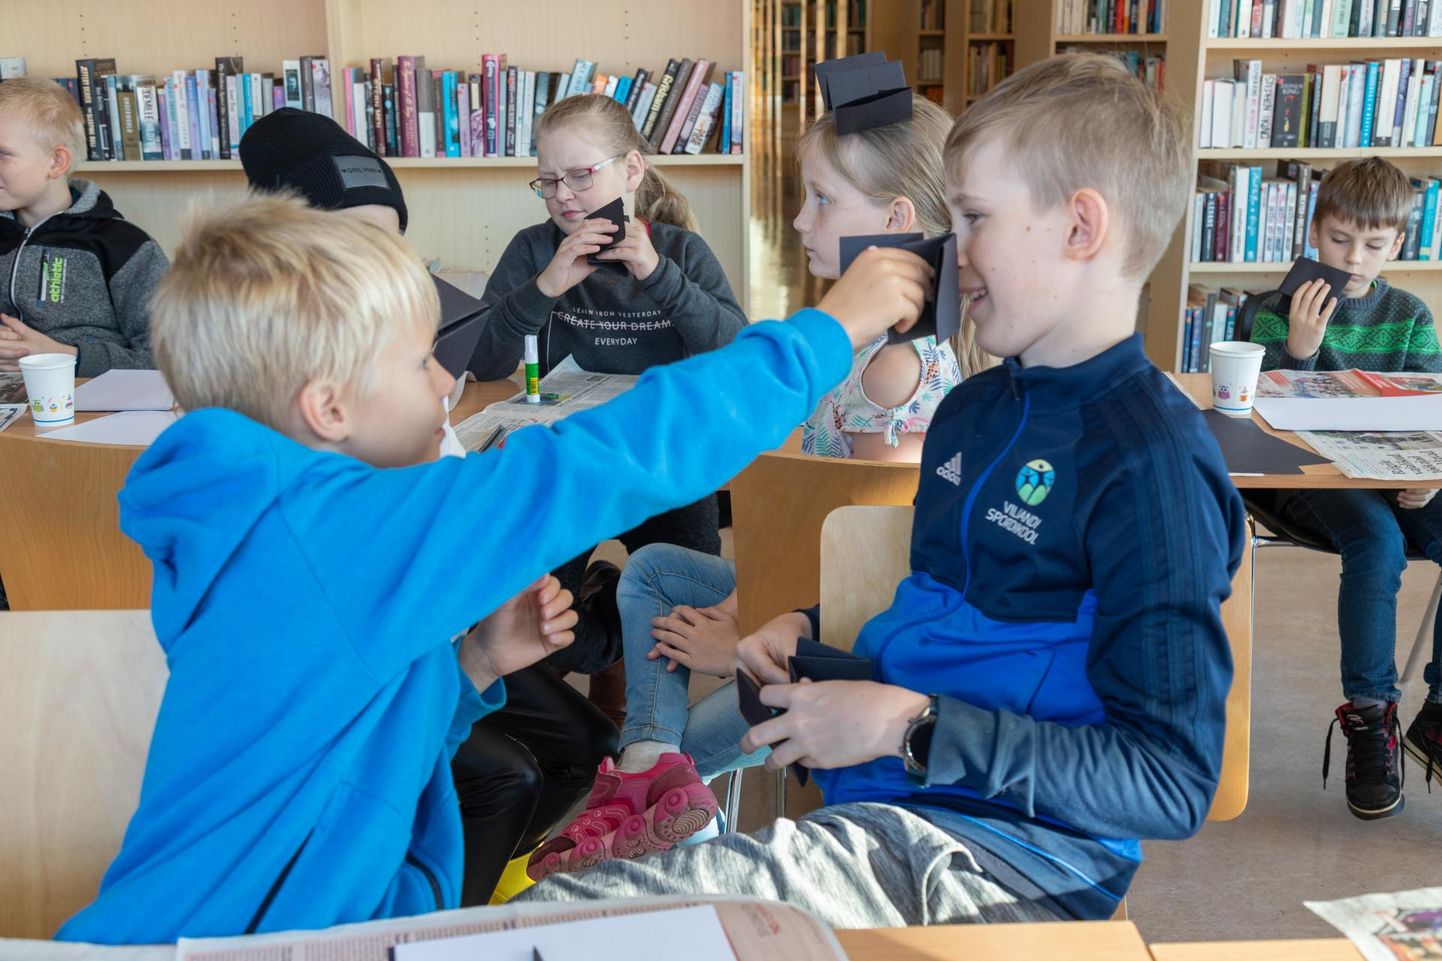 Teisipäeva lõunaks oli Viljandi linnaraamatukokku kohale tulnud suur hulk lapsi. Juhendajate õpetuse järgi valmisid paberist nahkhiired.